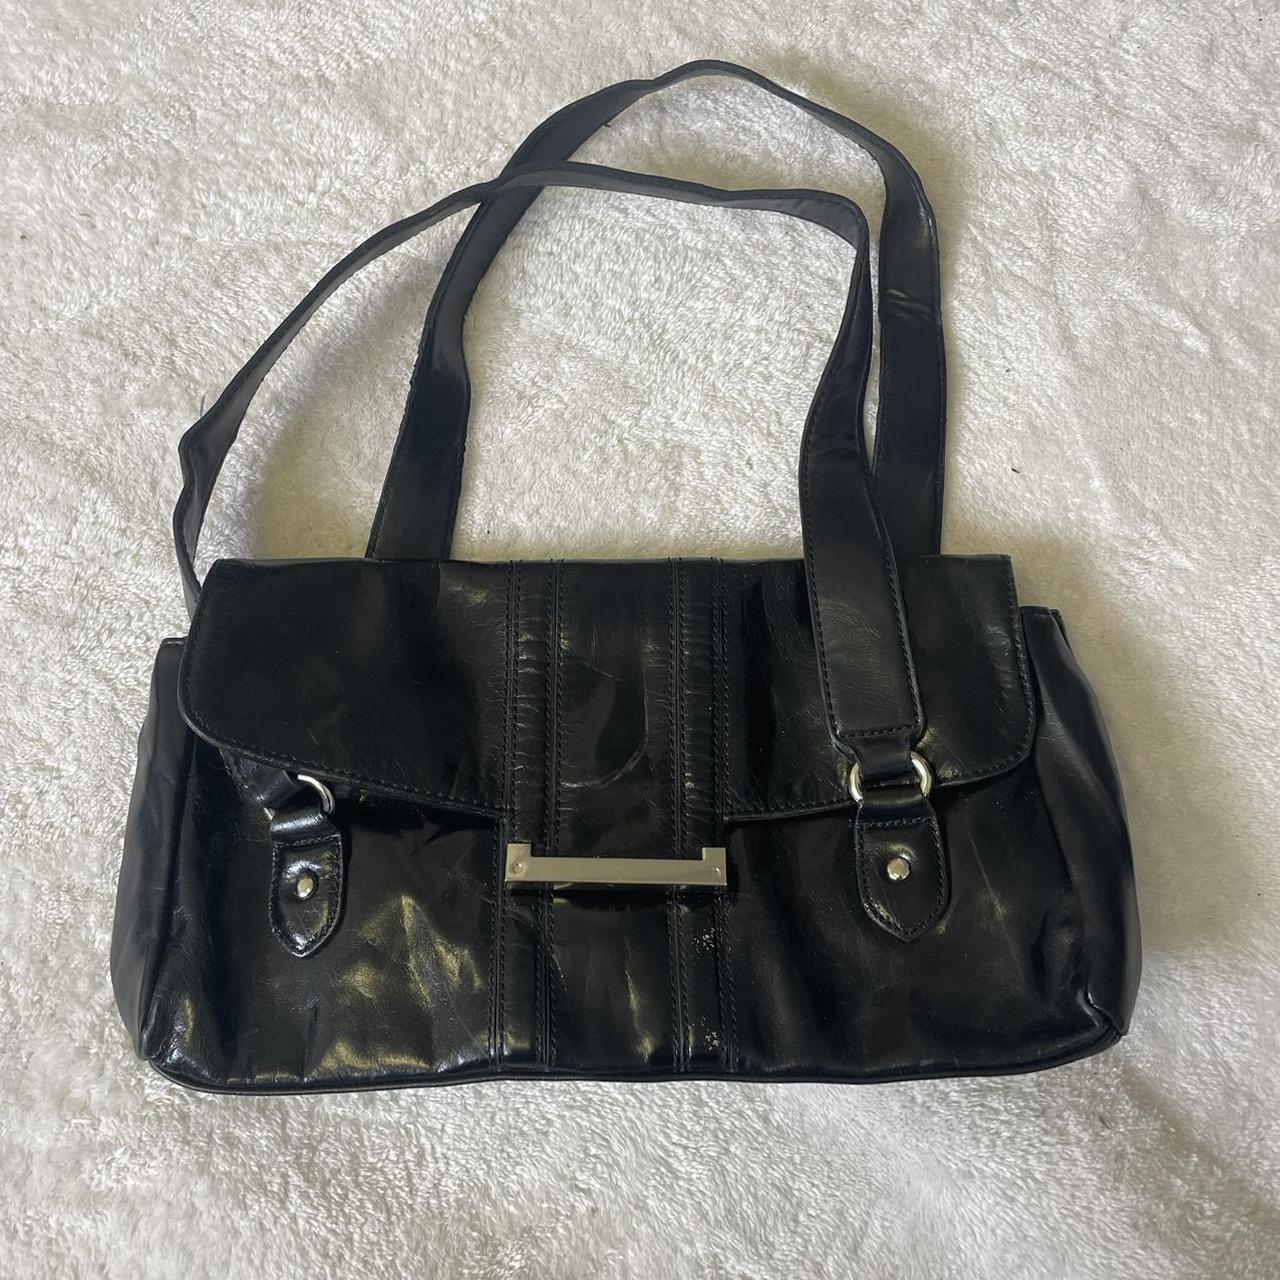 vintage shoulder bag brand - APT9 perfect for... - Depop